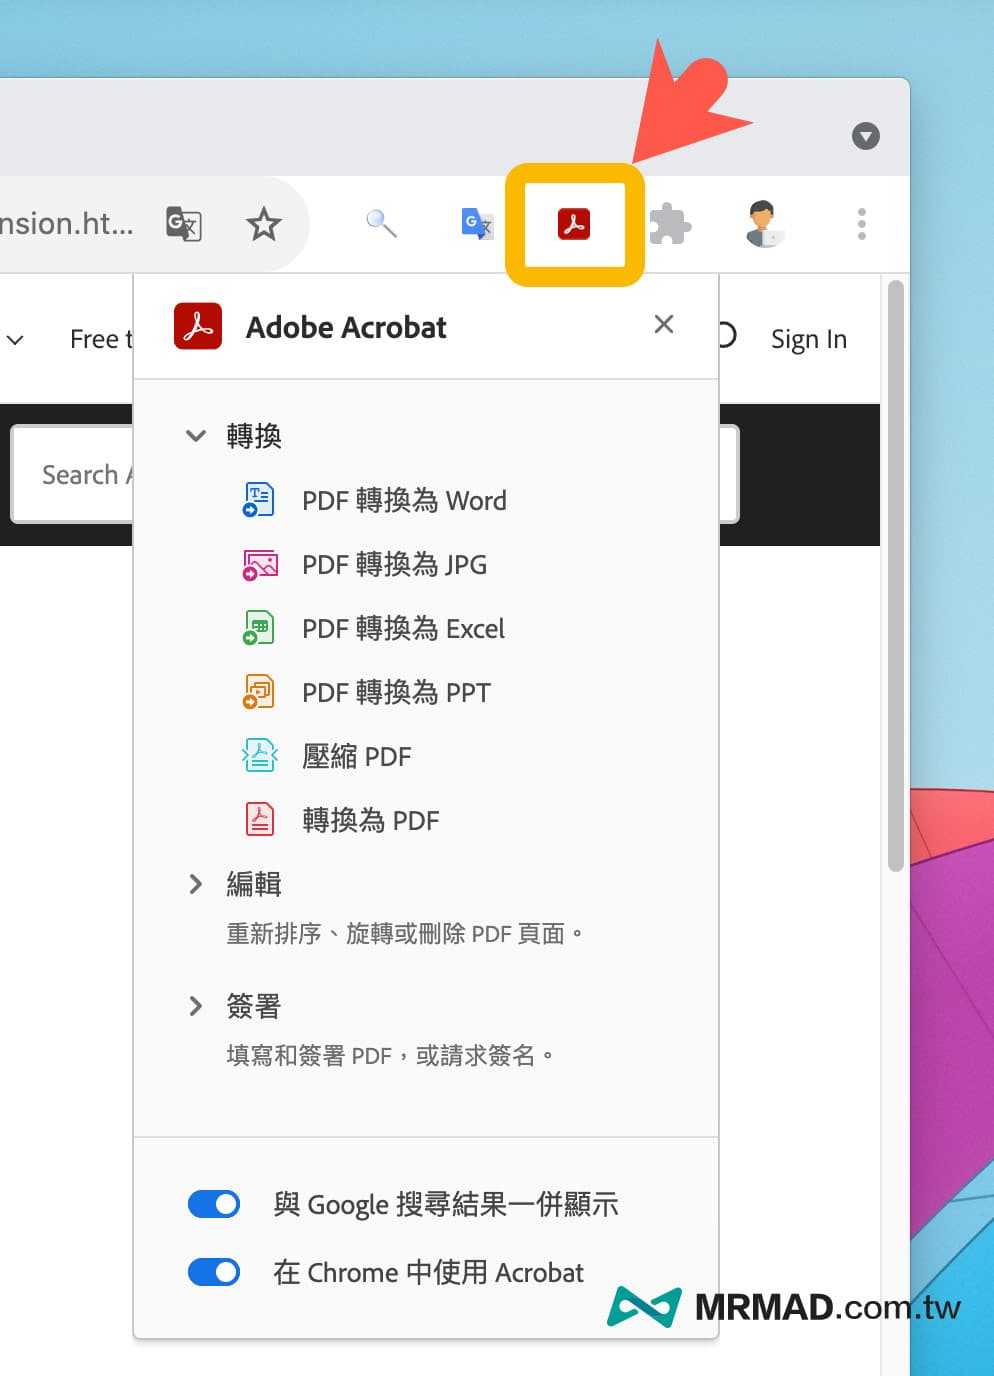 Adobe Acrobat Chrome 三大功能